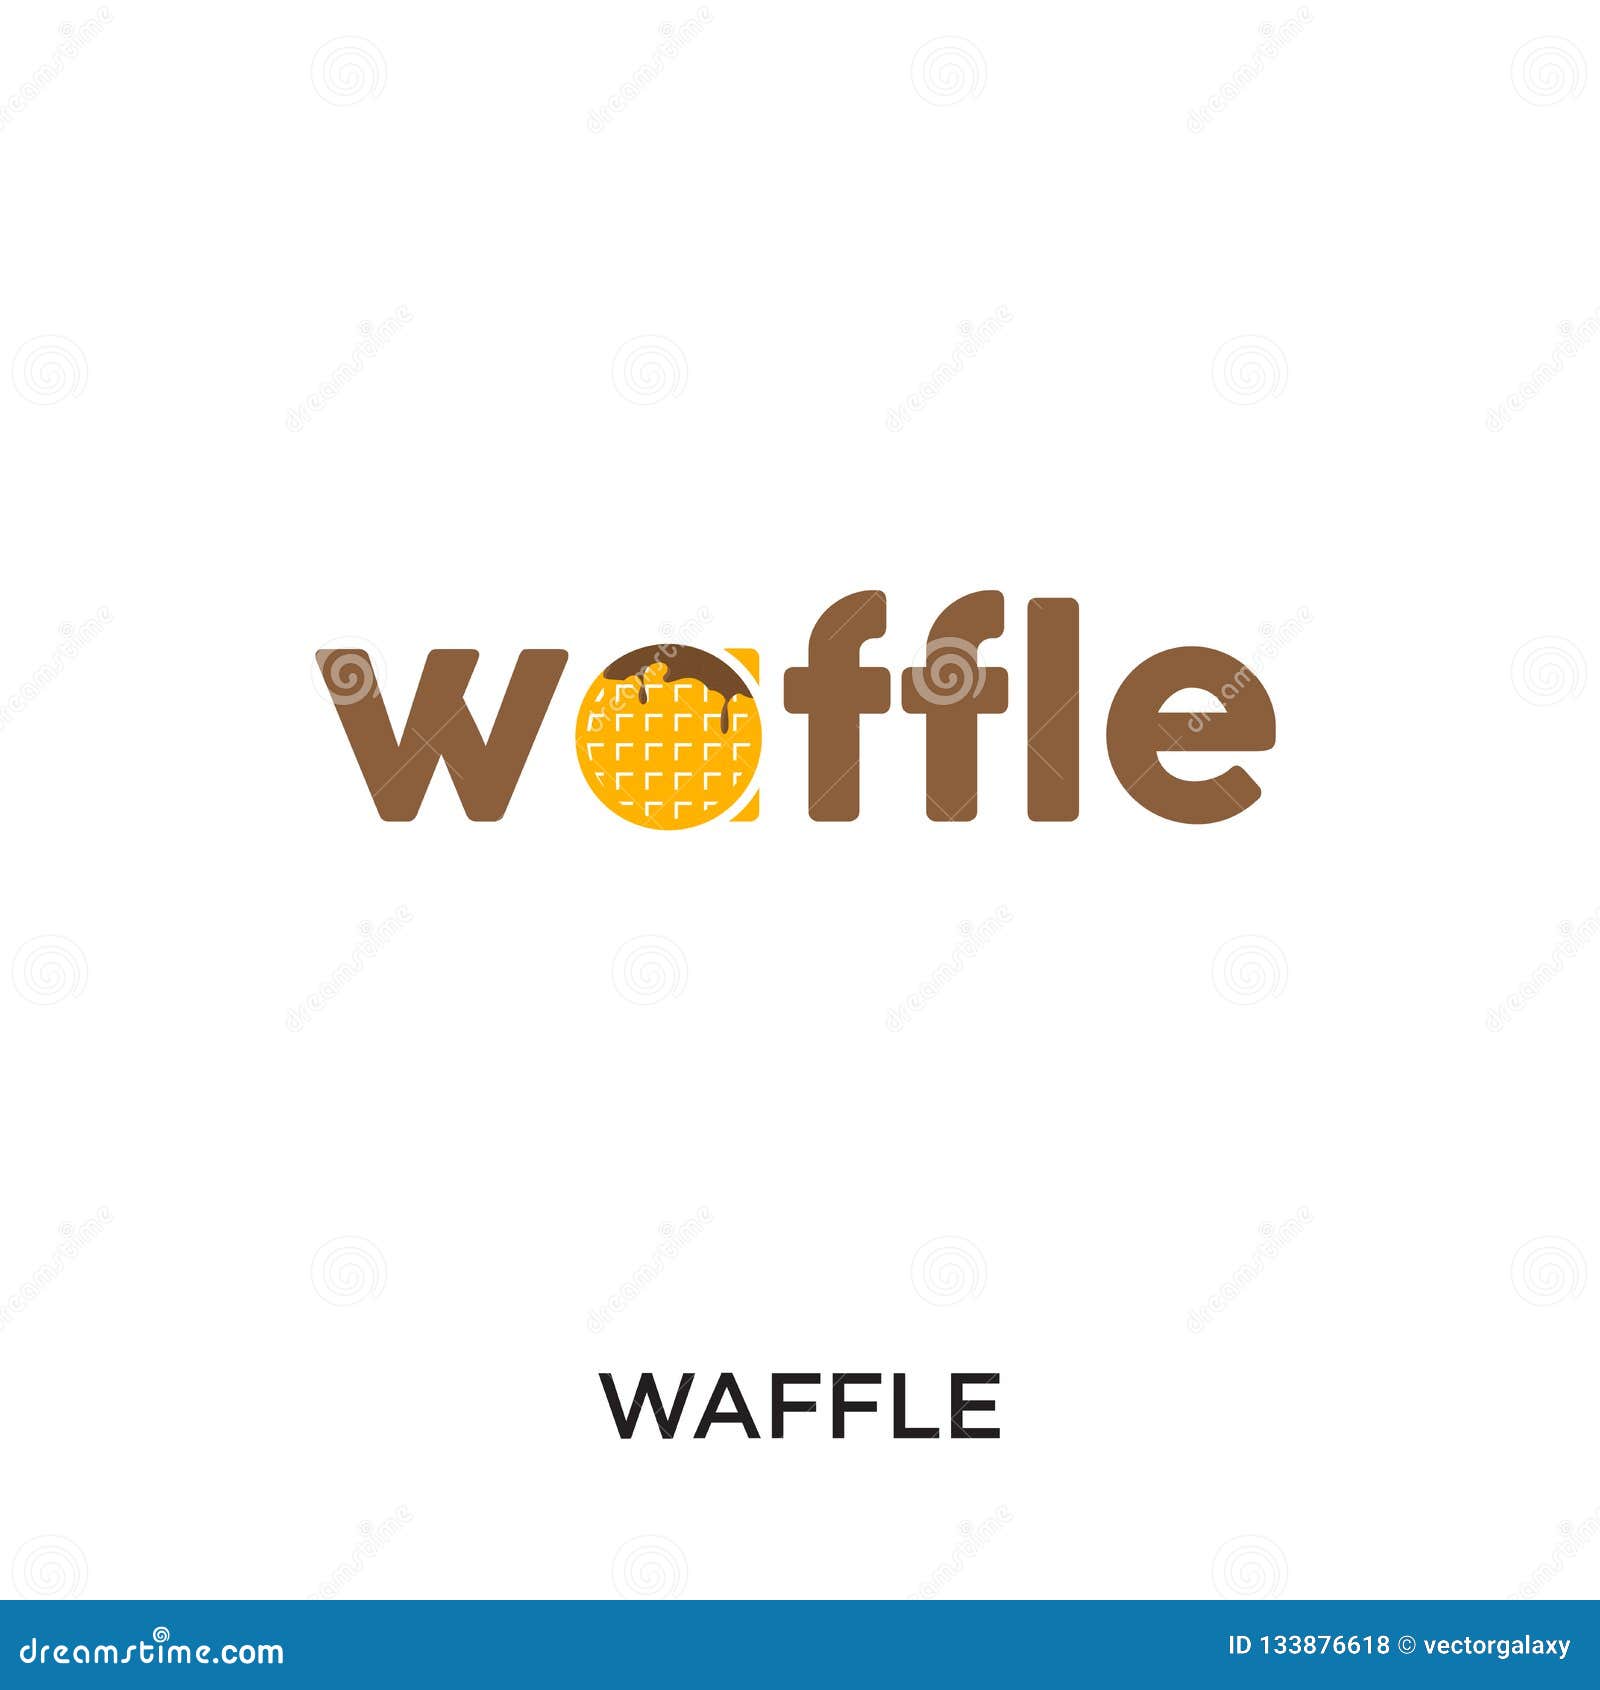 The Flying Waffle logo • LogoMoose - Logo Inspiration